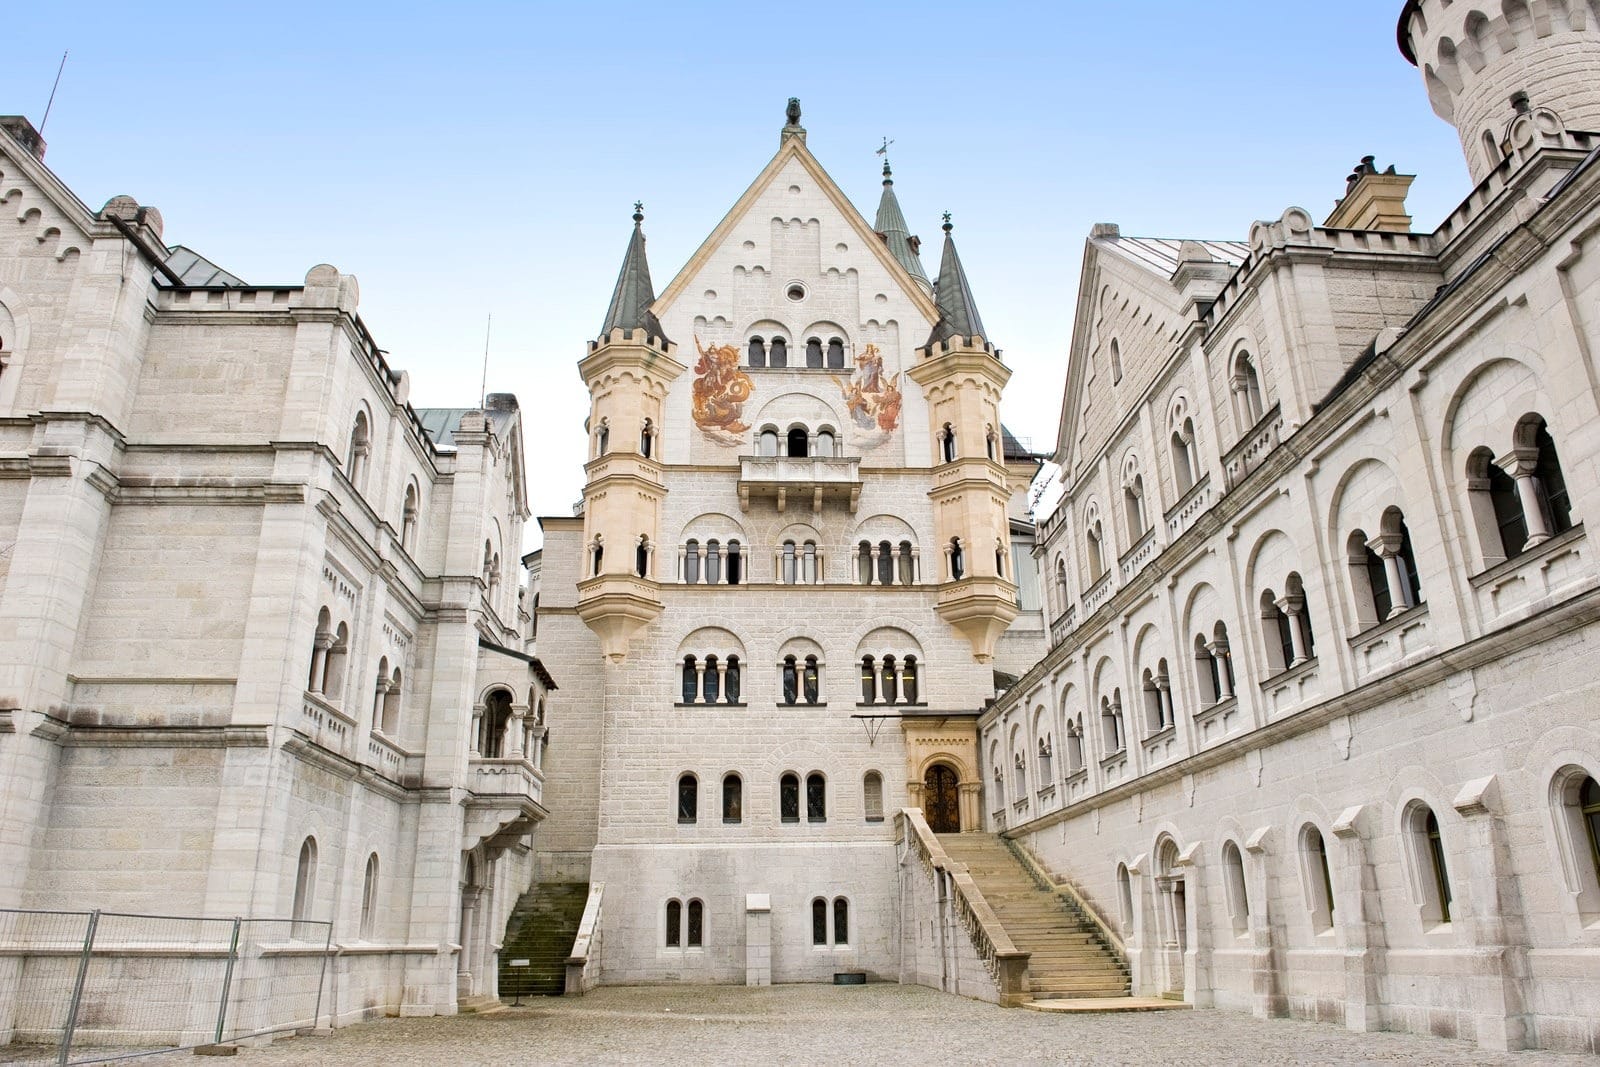 The internal courtyard of Neuschwanstein Castle